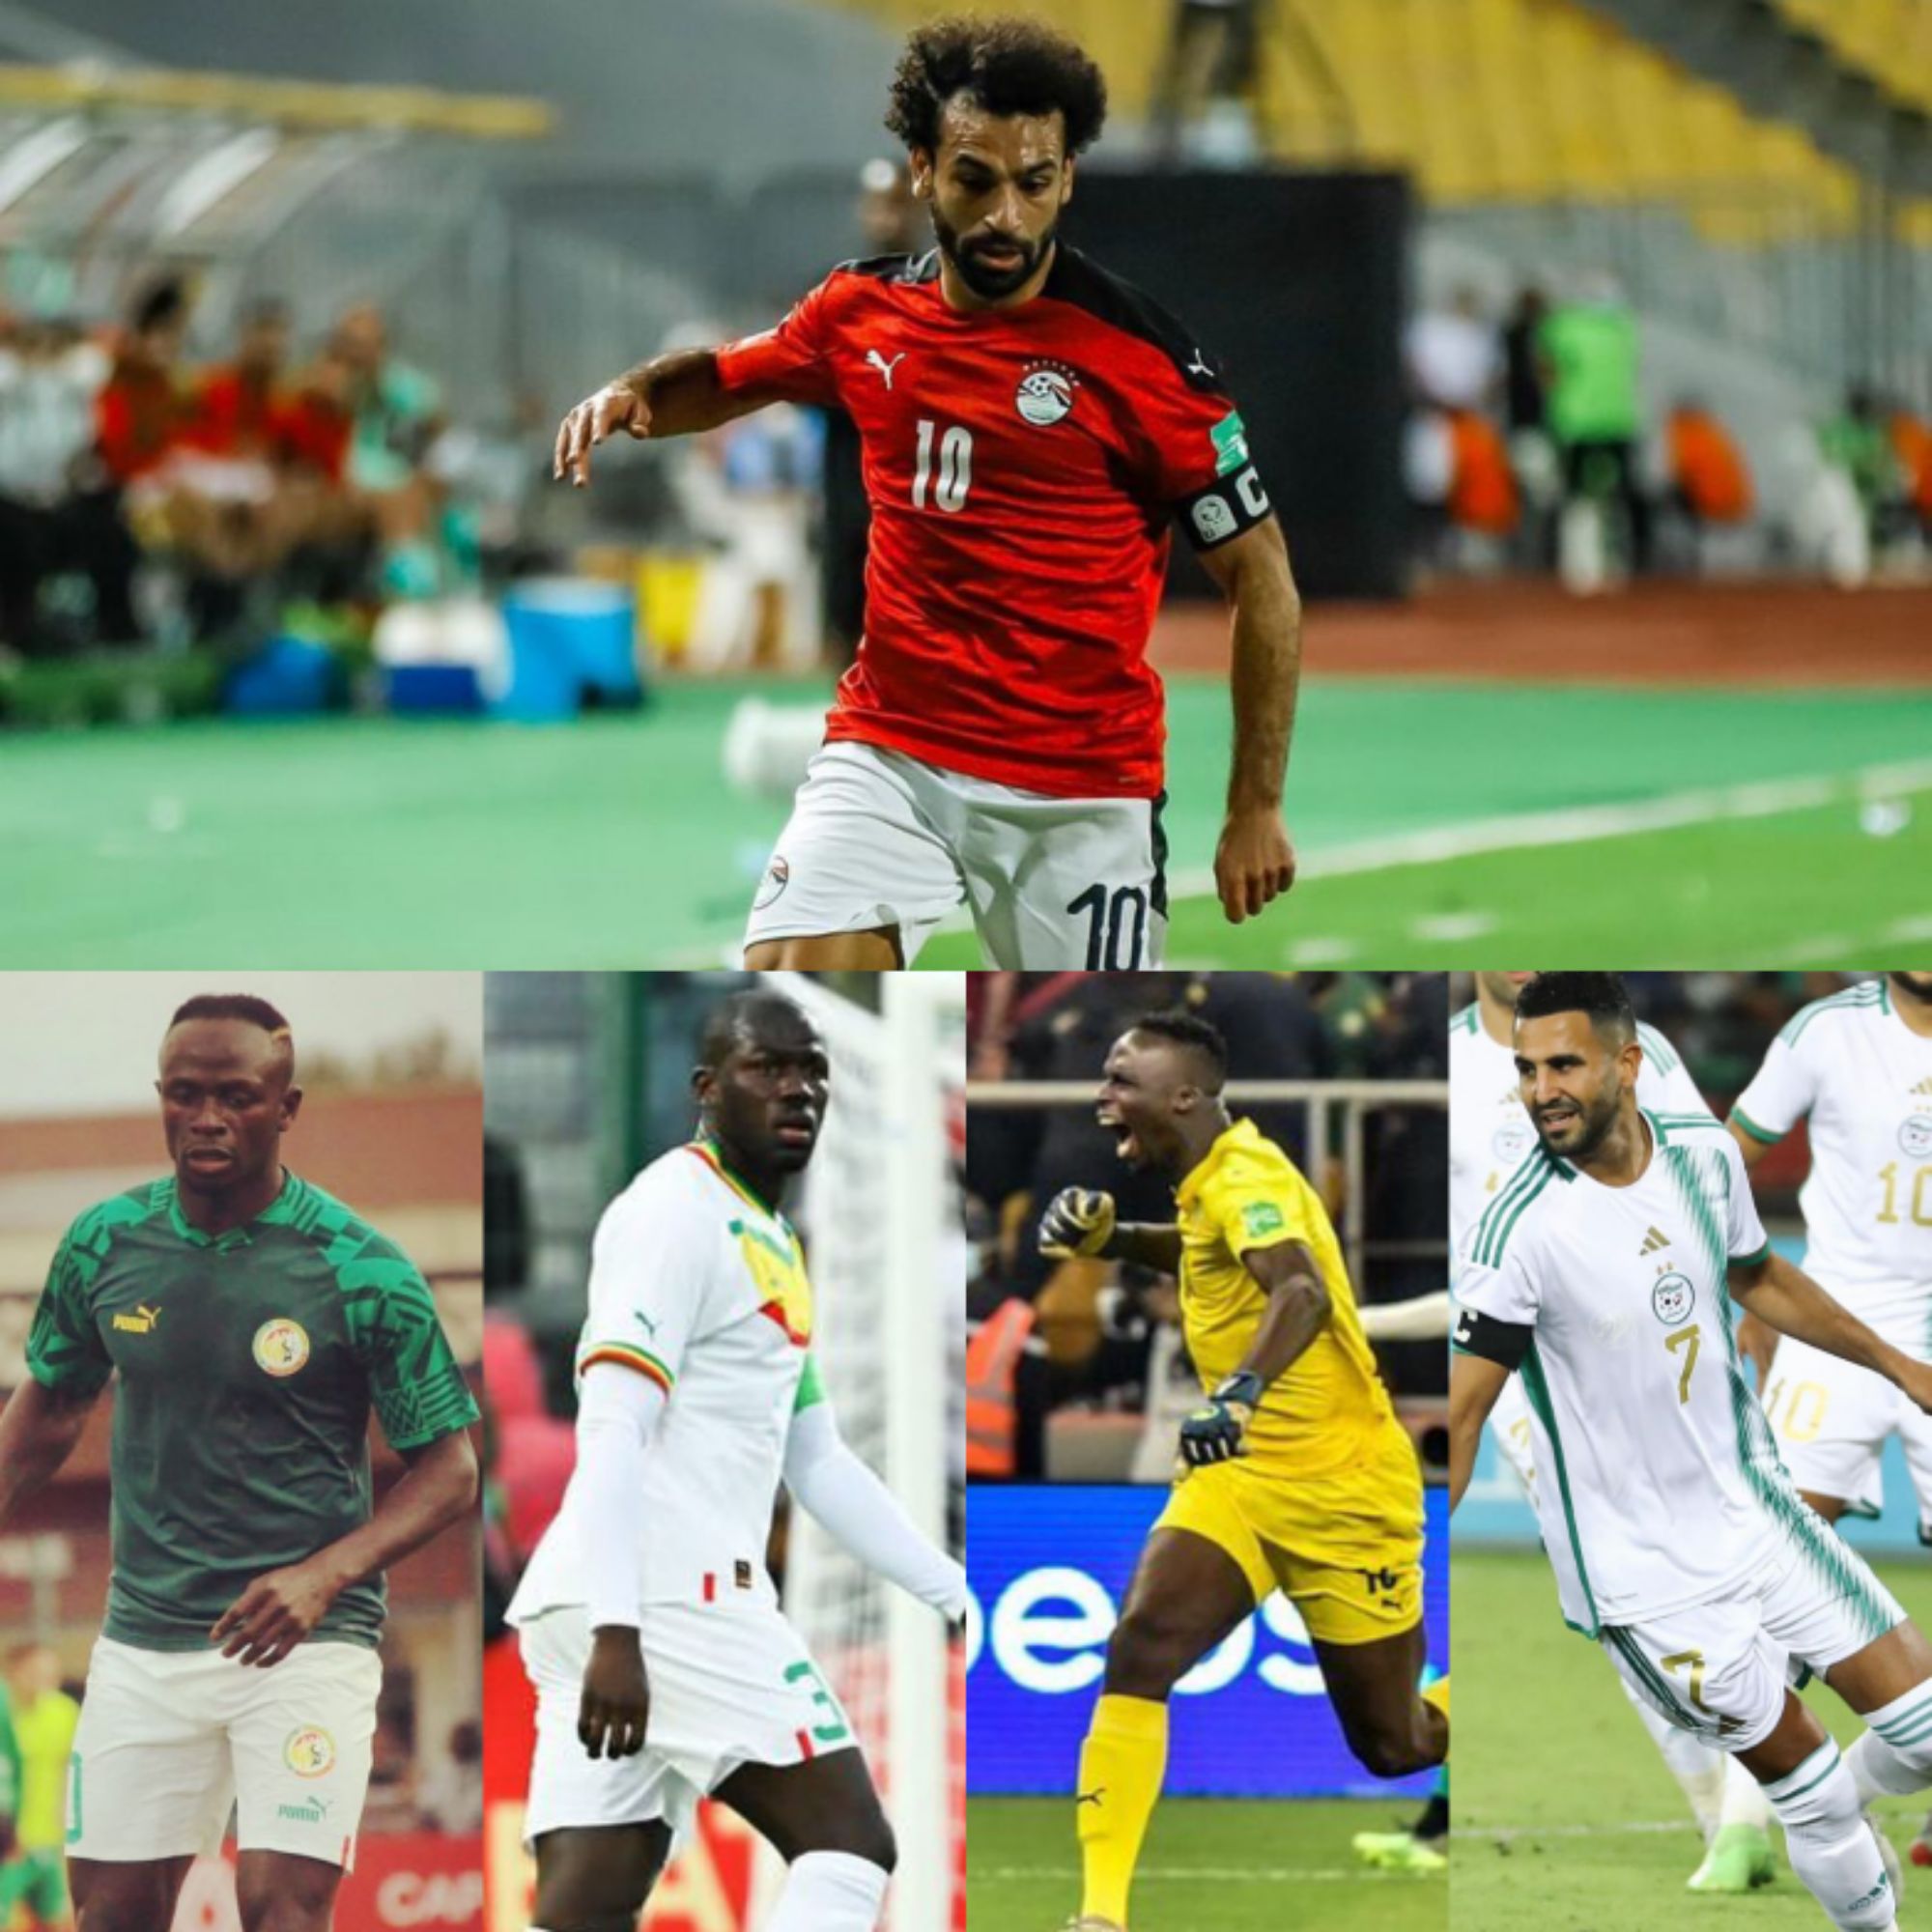 Mohamed Salah - JOGADOR CONVOCADO DA SELEÇÃO DO EGITO À COPA DO MUNDO 2018  RÚSSIA - SELEÇÃO DO EGITO NA COPA DO MUNDO DE 2018 NA RÚSSIA